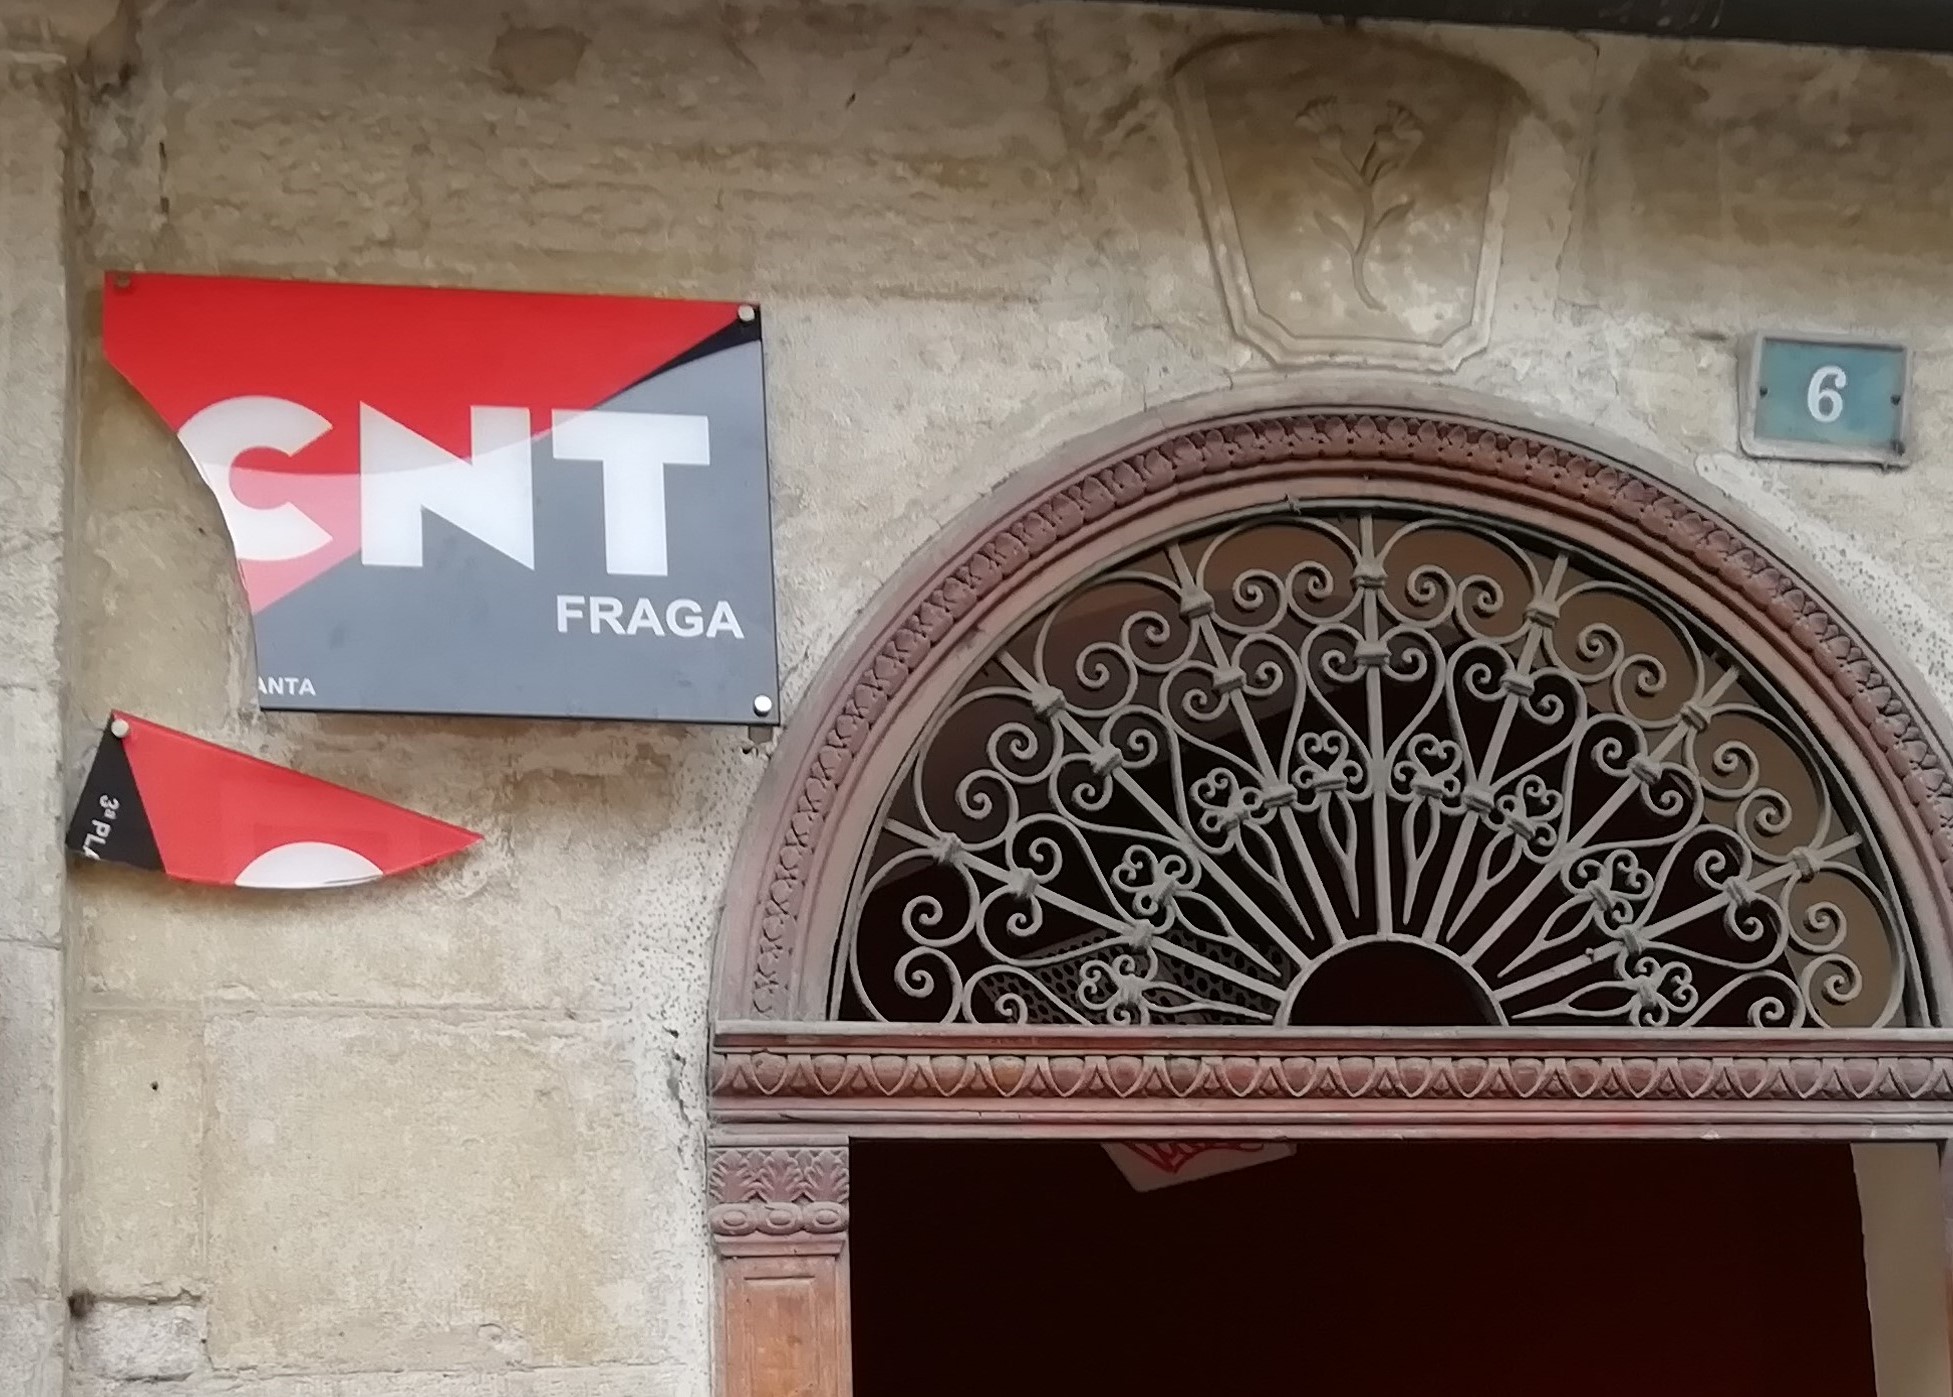 El local de la CNT de Fraga sufre una agresión